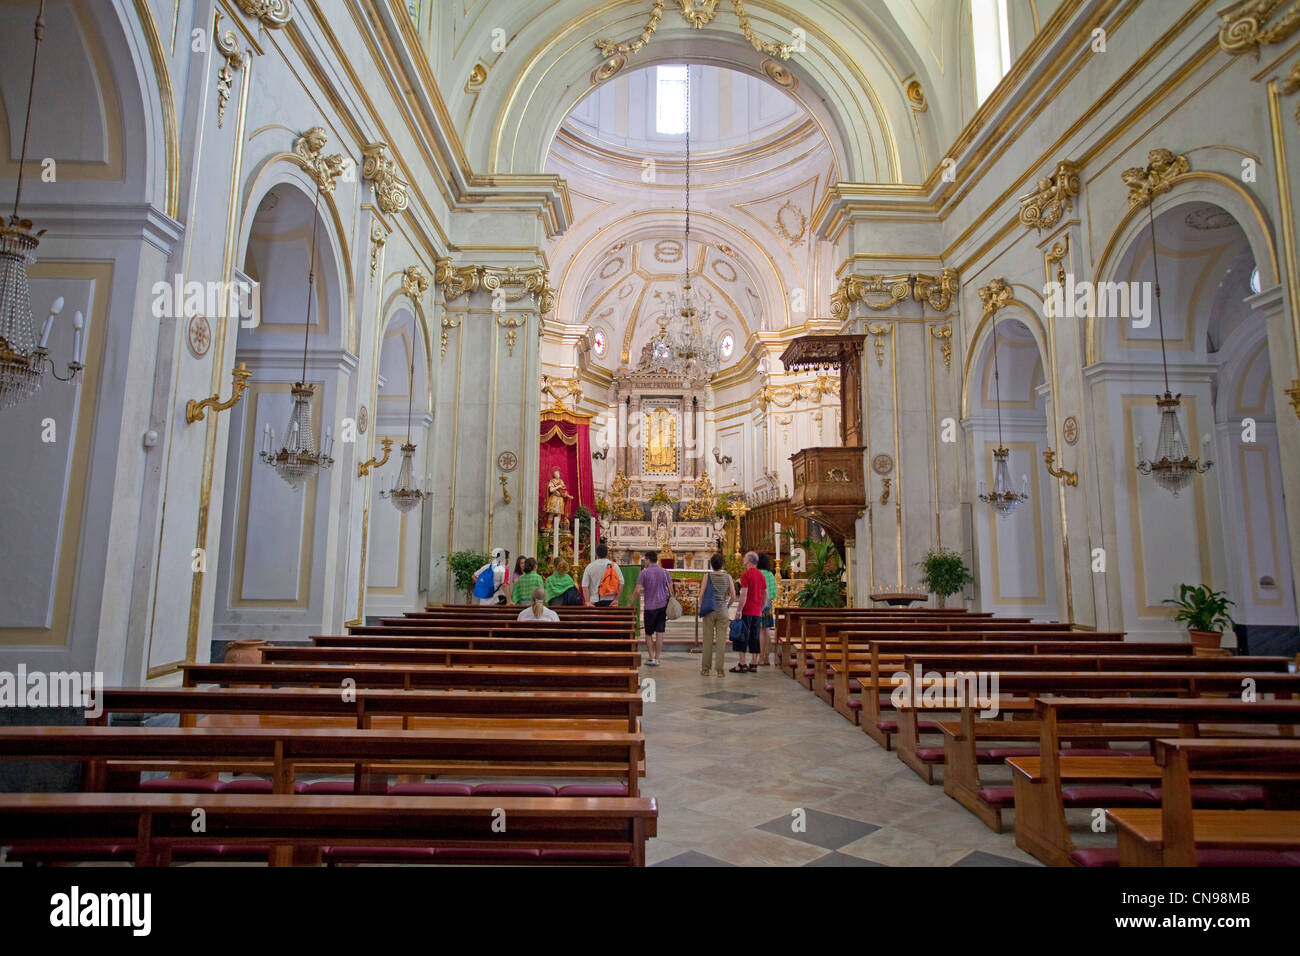 A l'intérieur de l'église de Positano, Amalfi coast, UNESCO World Heritage site, Campanie, Italie, Méditerranée, Europe Banque D'Images